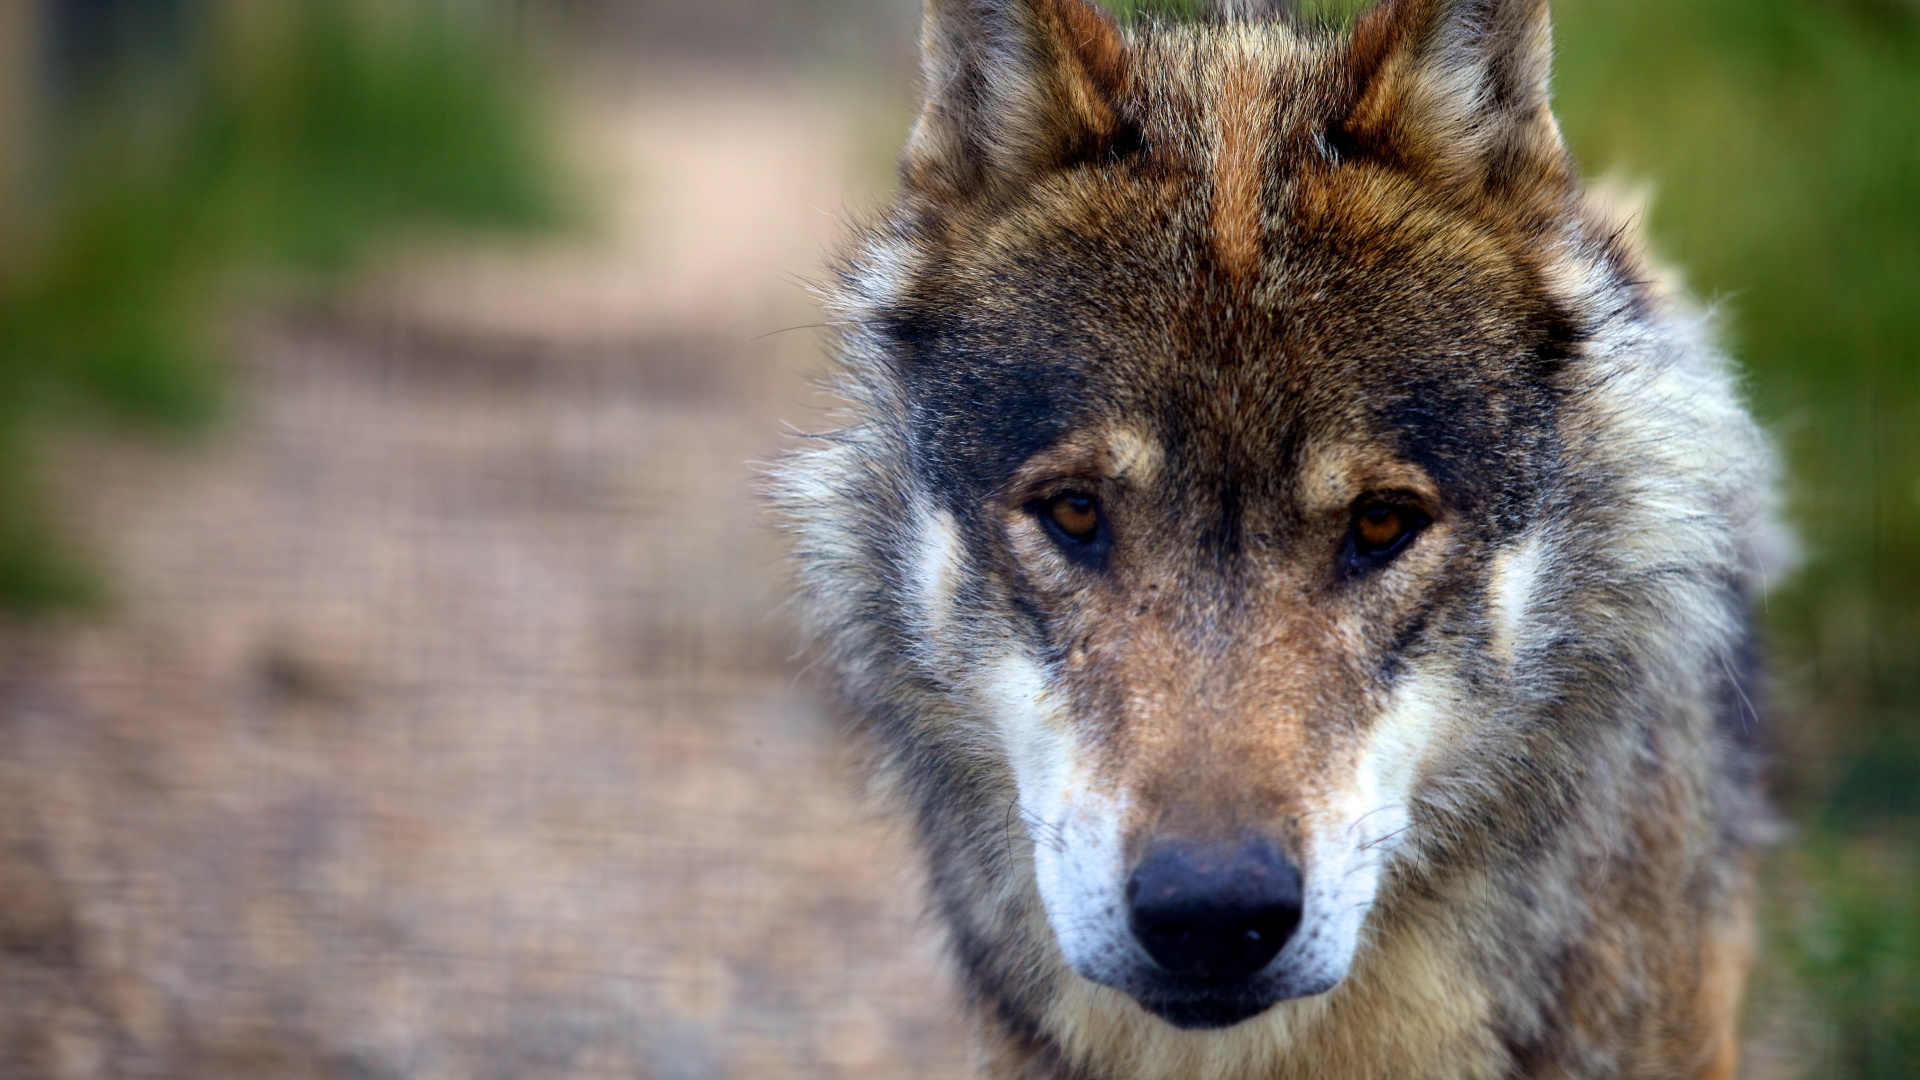 狼, 野生动物, 捷克斯洛伐克那只狼狗, 那只狼狗, 狗喜欢哺乳动物 壁纸 1920x1080 允许